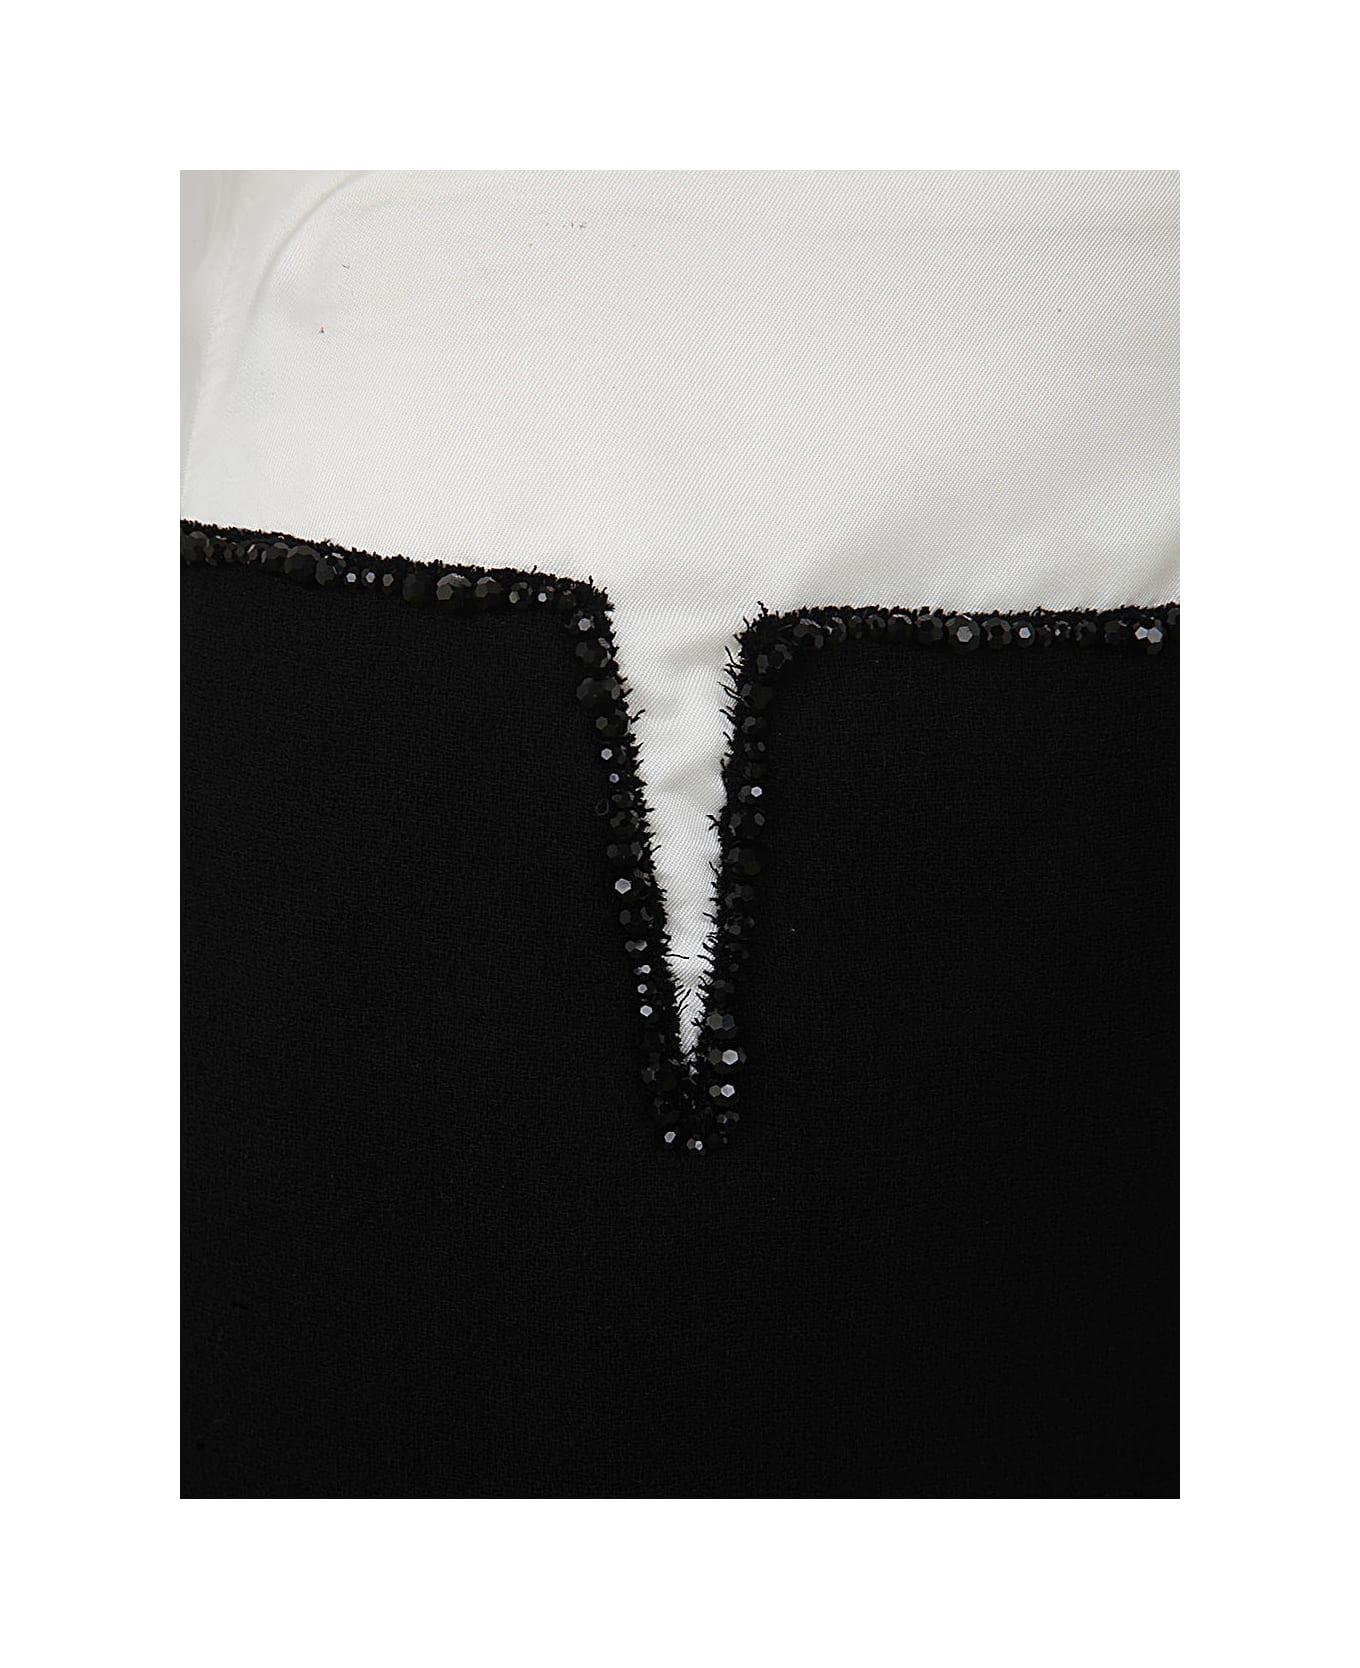 N.21 Crepe Pencil Skirt - Black スカート